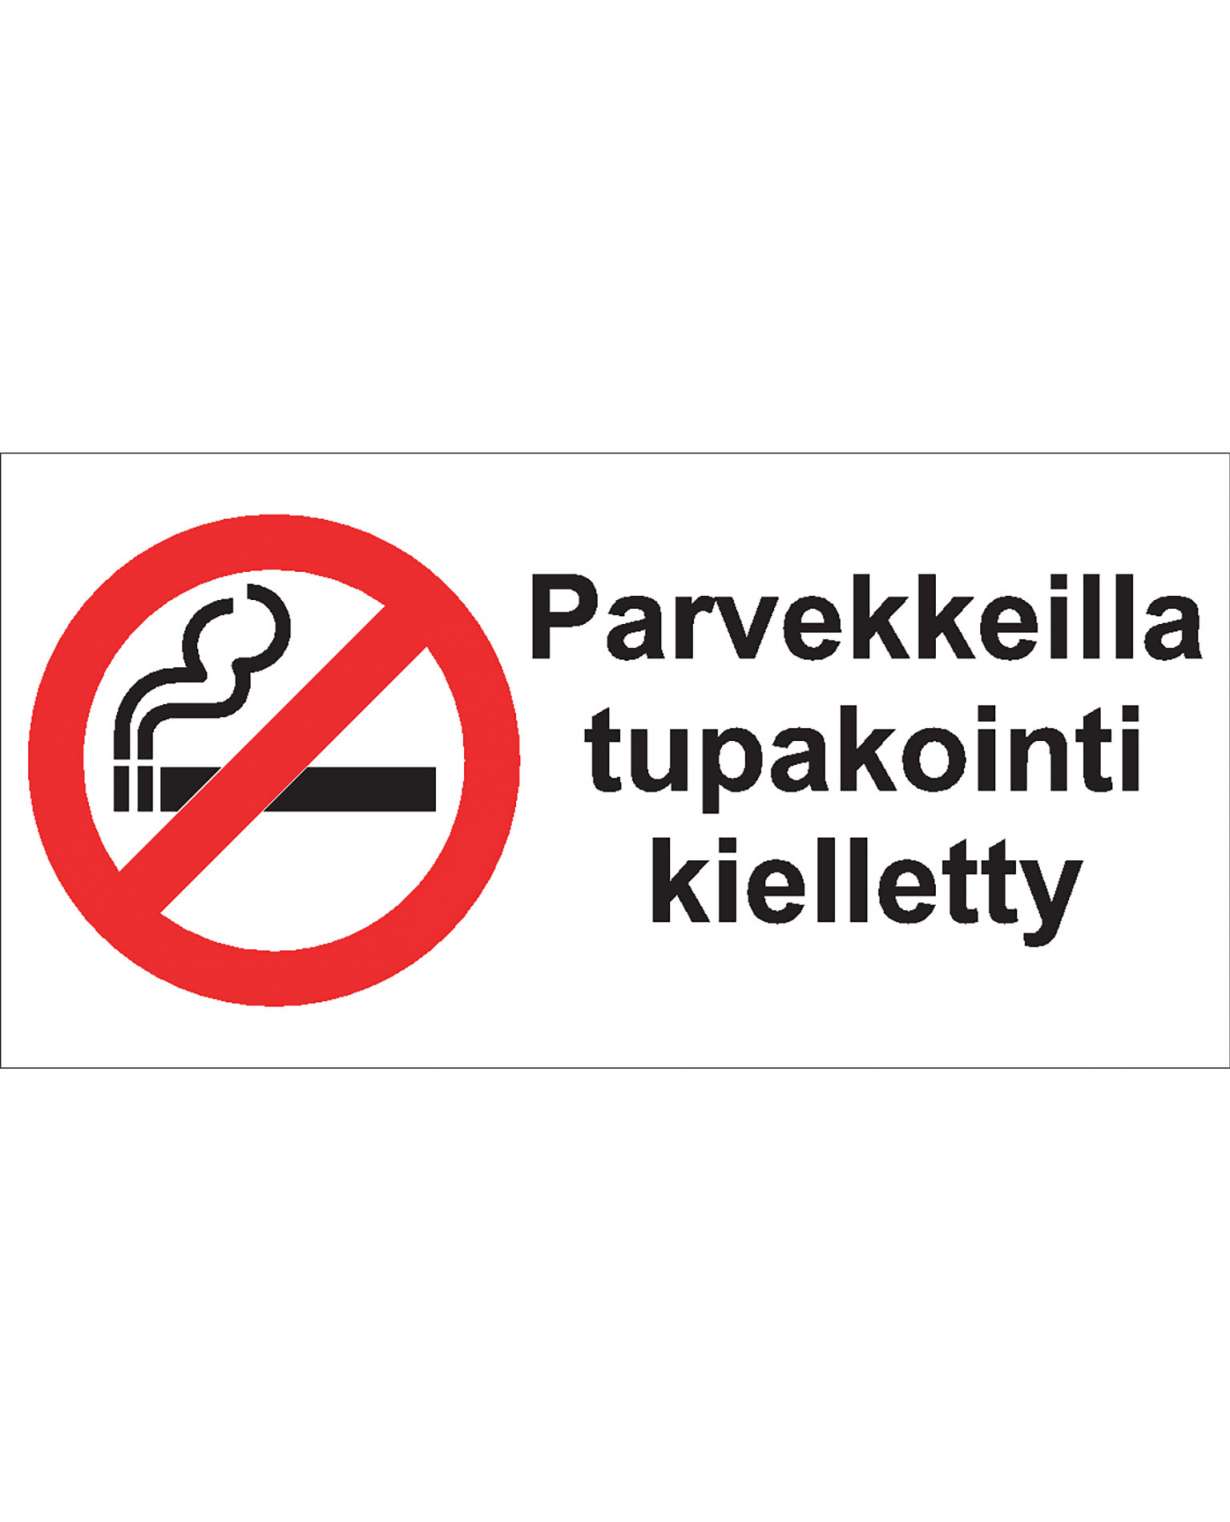 Parvekkeilla tupakointi kielletty, Muovi 1mm, 400x200 mm